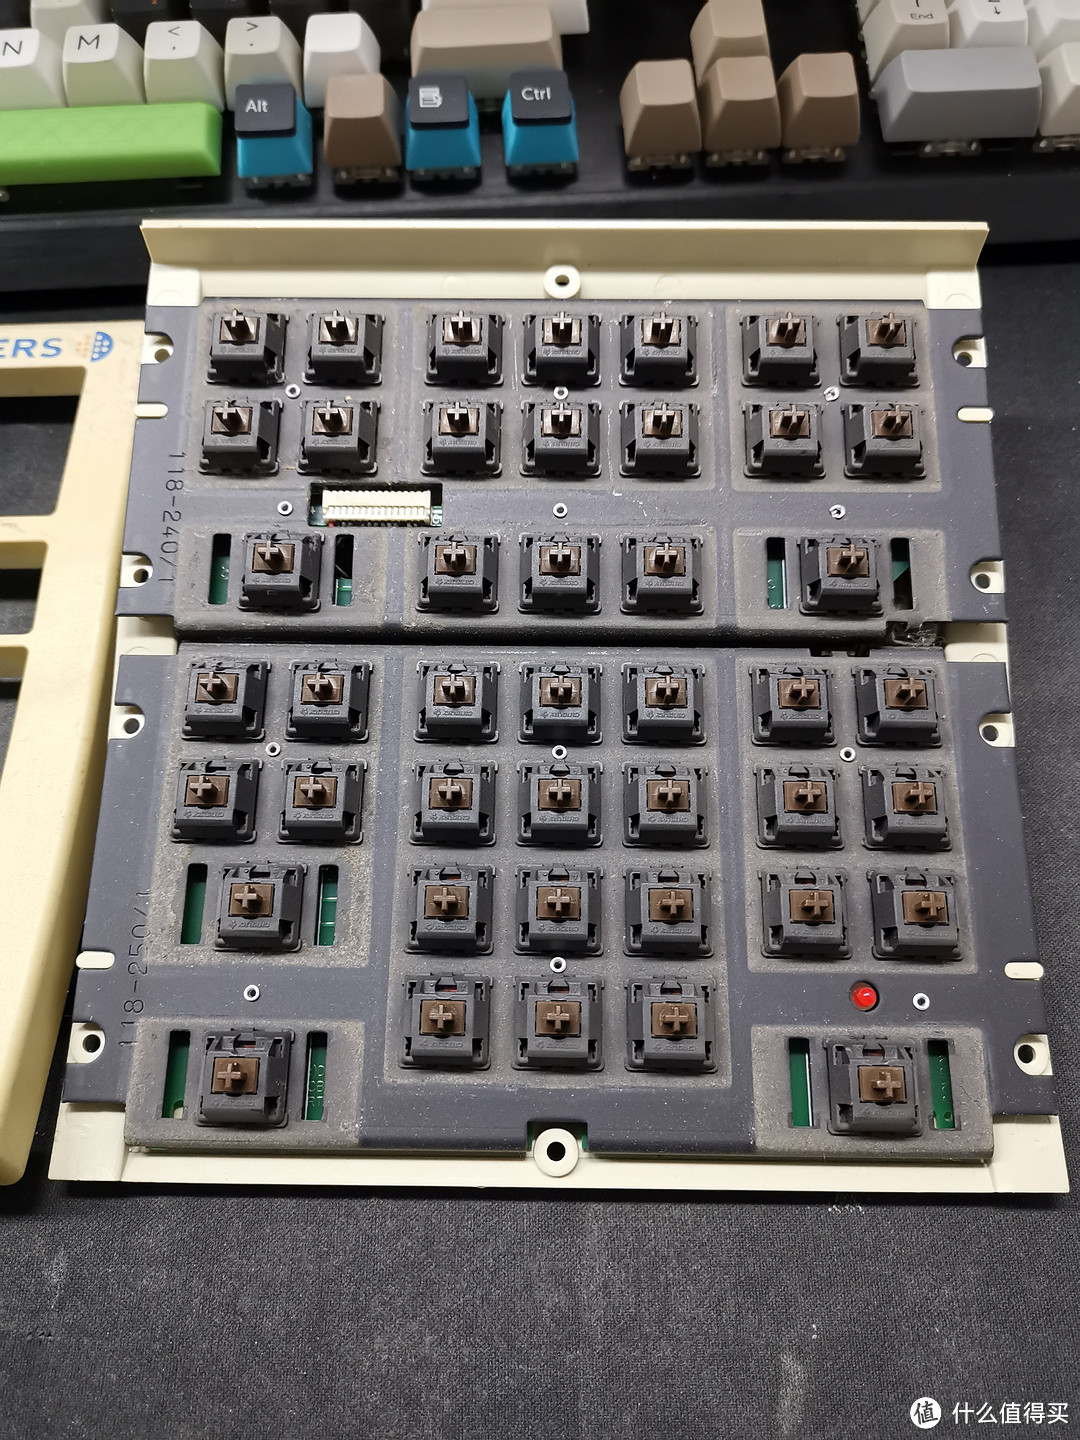 新手小白修复路透社机械键盘——超详细QMK刷机教程